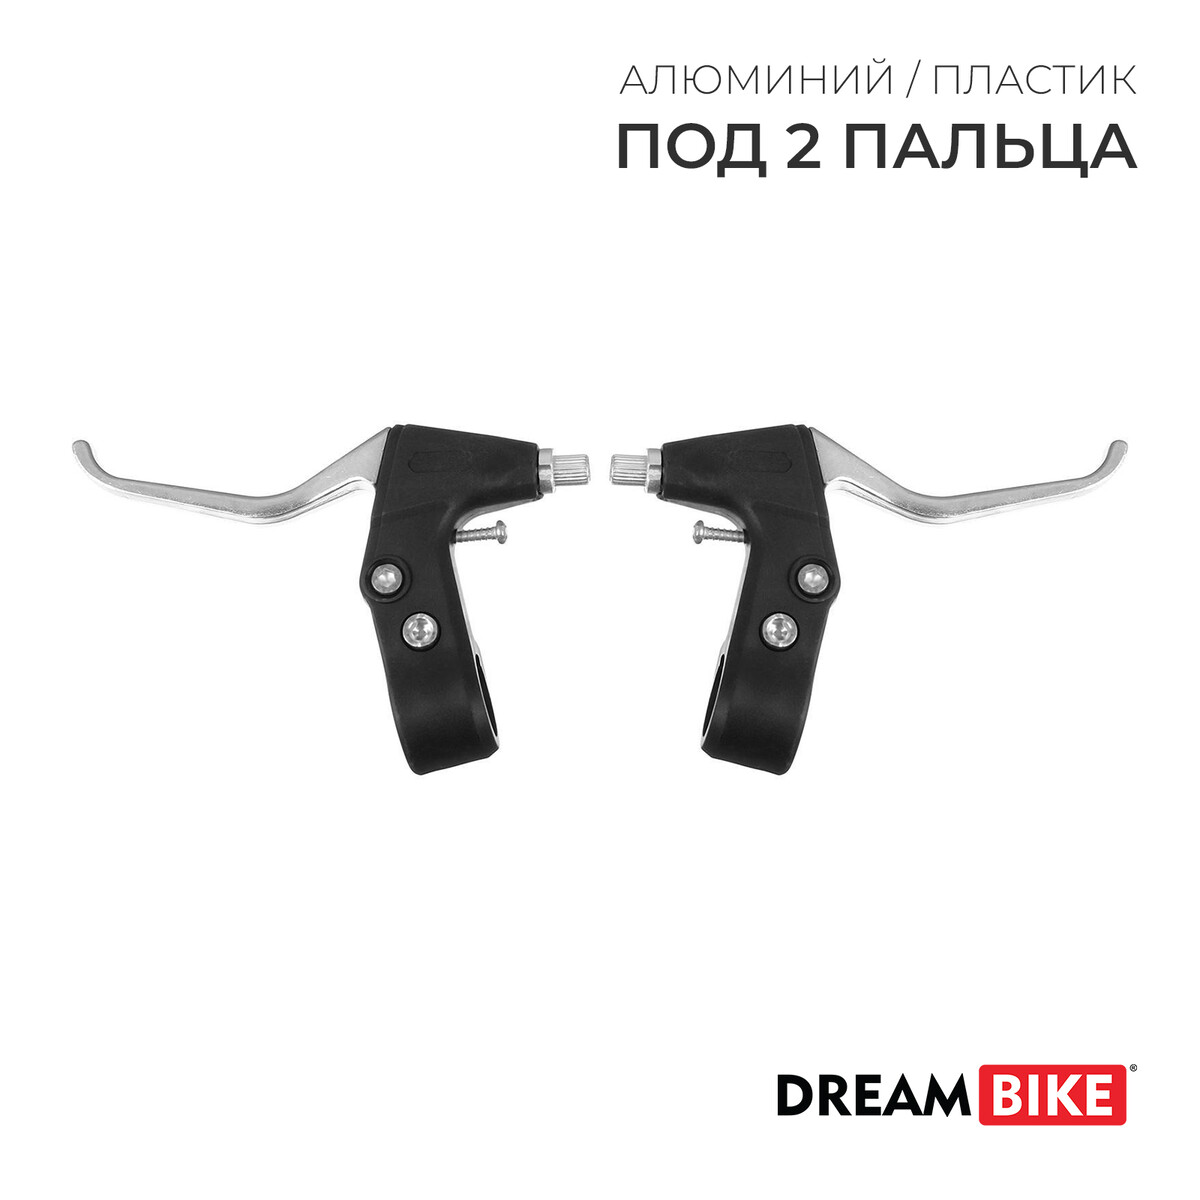    dream bike, /